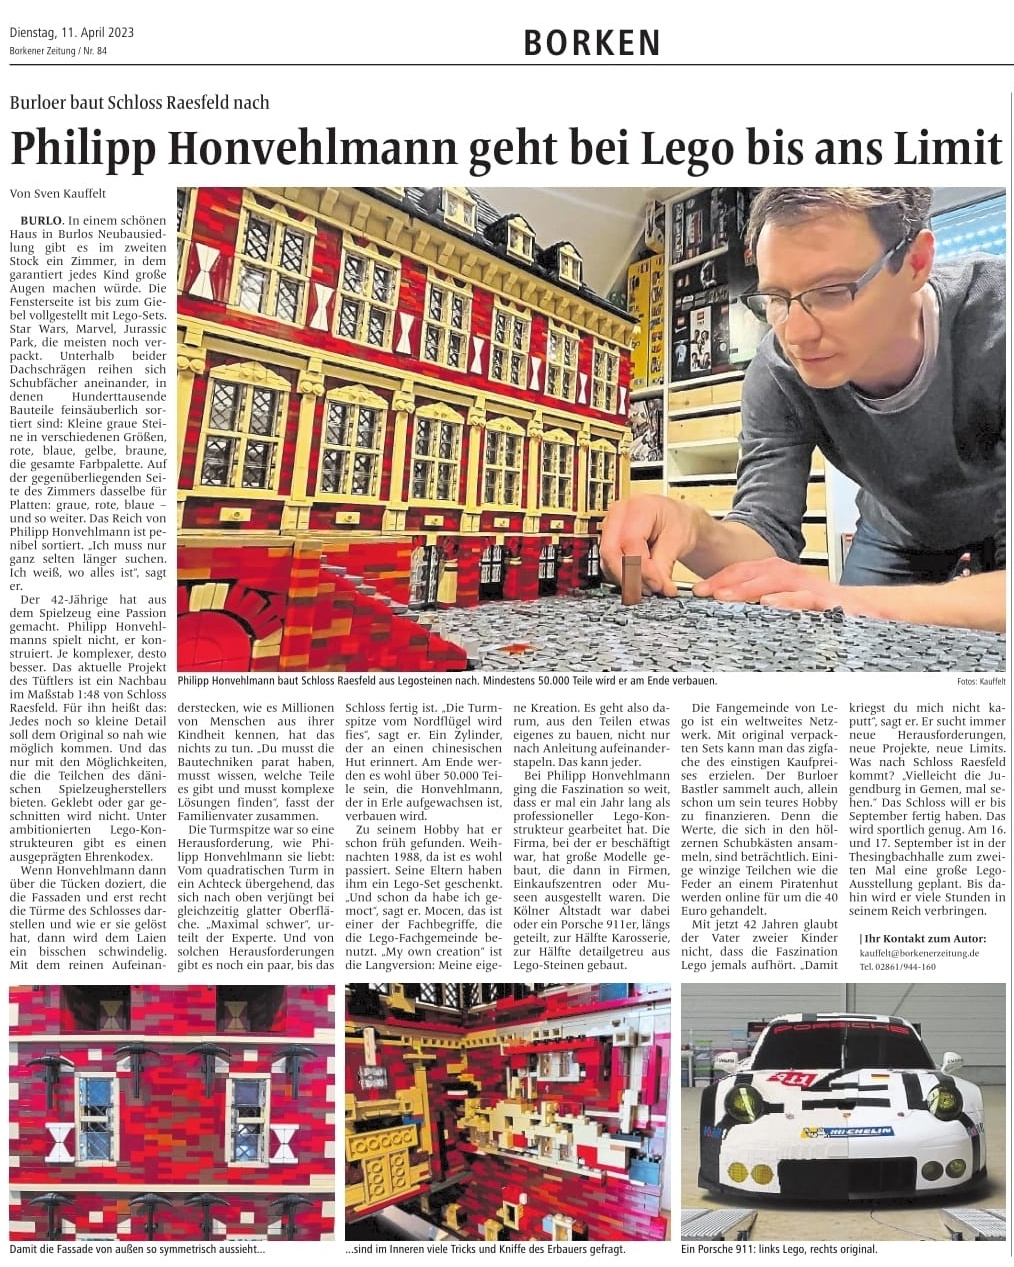 Artikel Borkener Zeitung Philip Honvehlmann